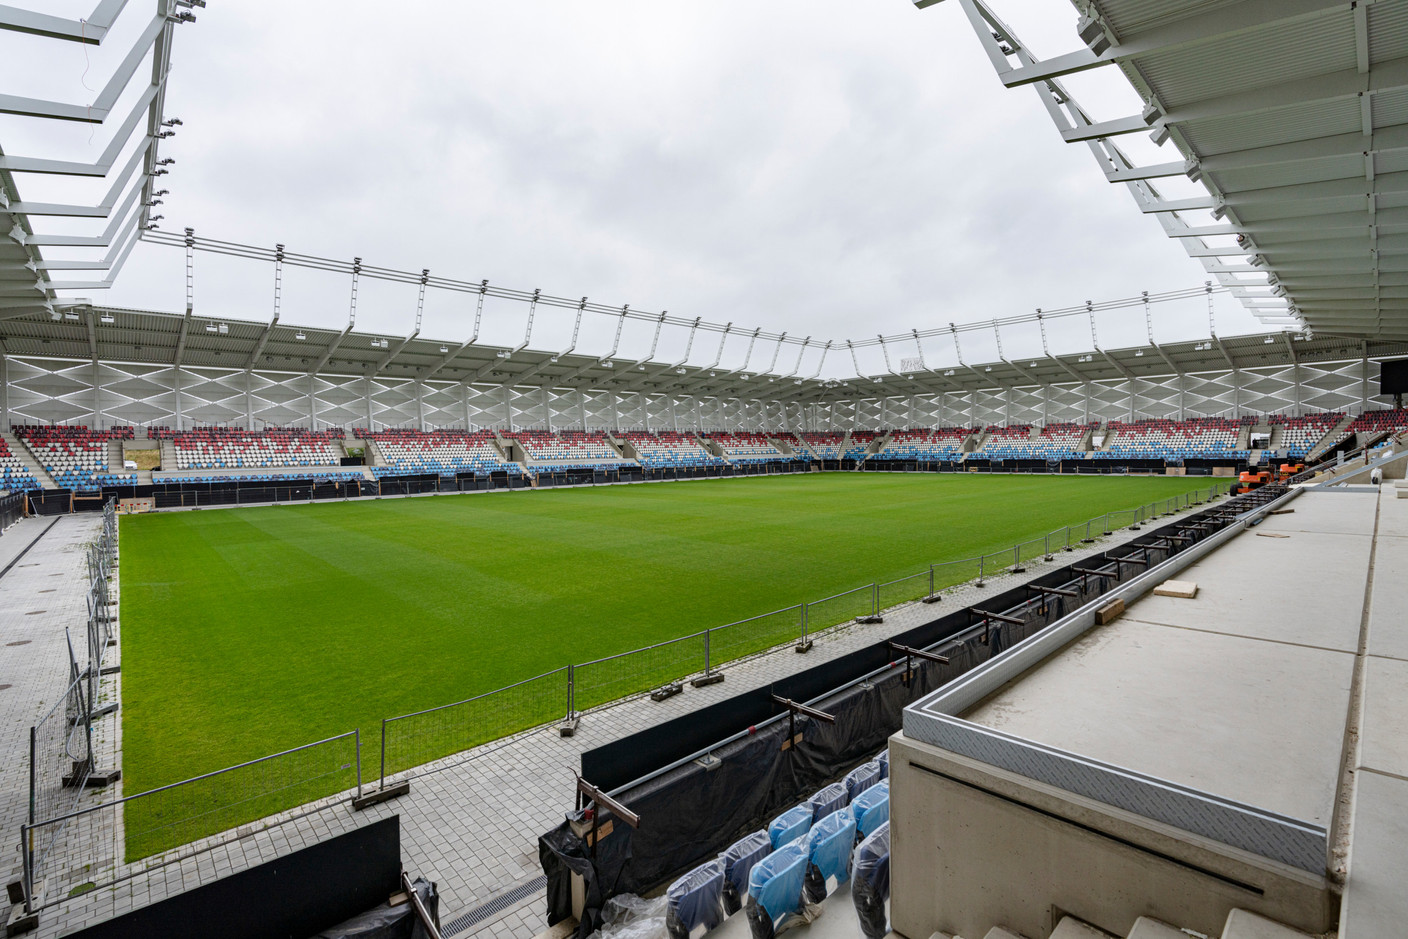 Le nouveau stade national sera baptisé «Stade de Luxembourg». (Photo: Caroline Martin)